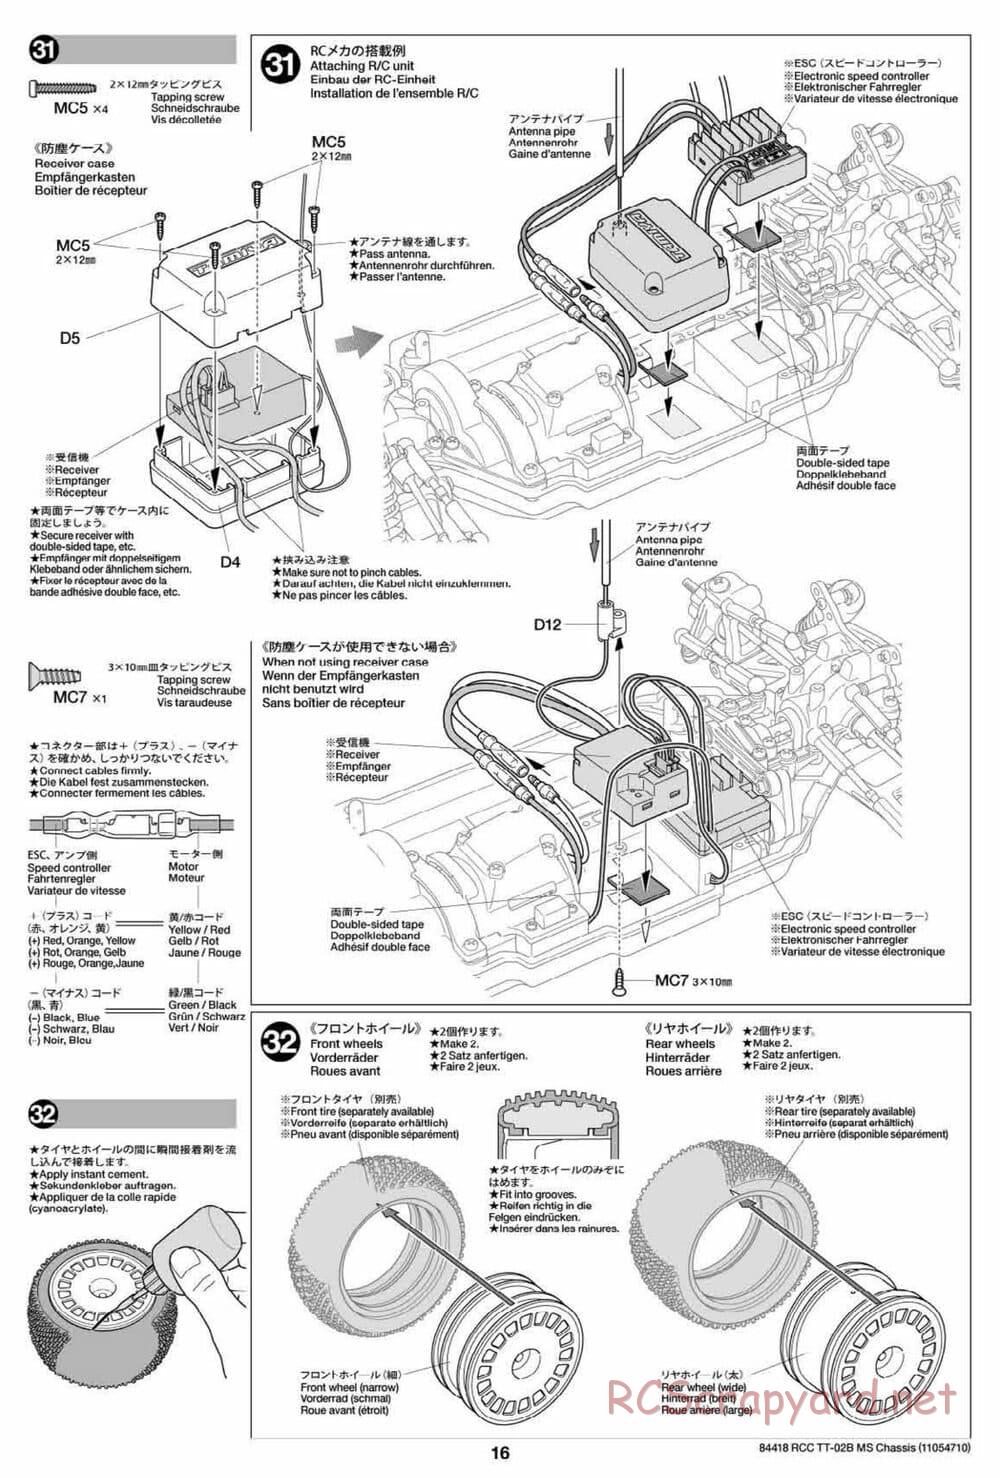 Tamiya - TT-02B MS Chassis - Manual - Page 16